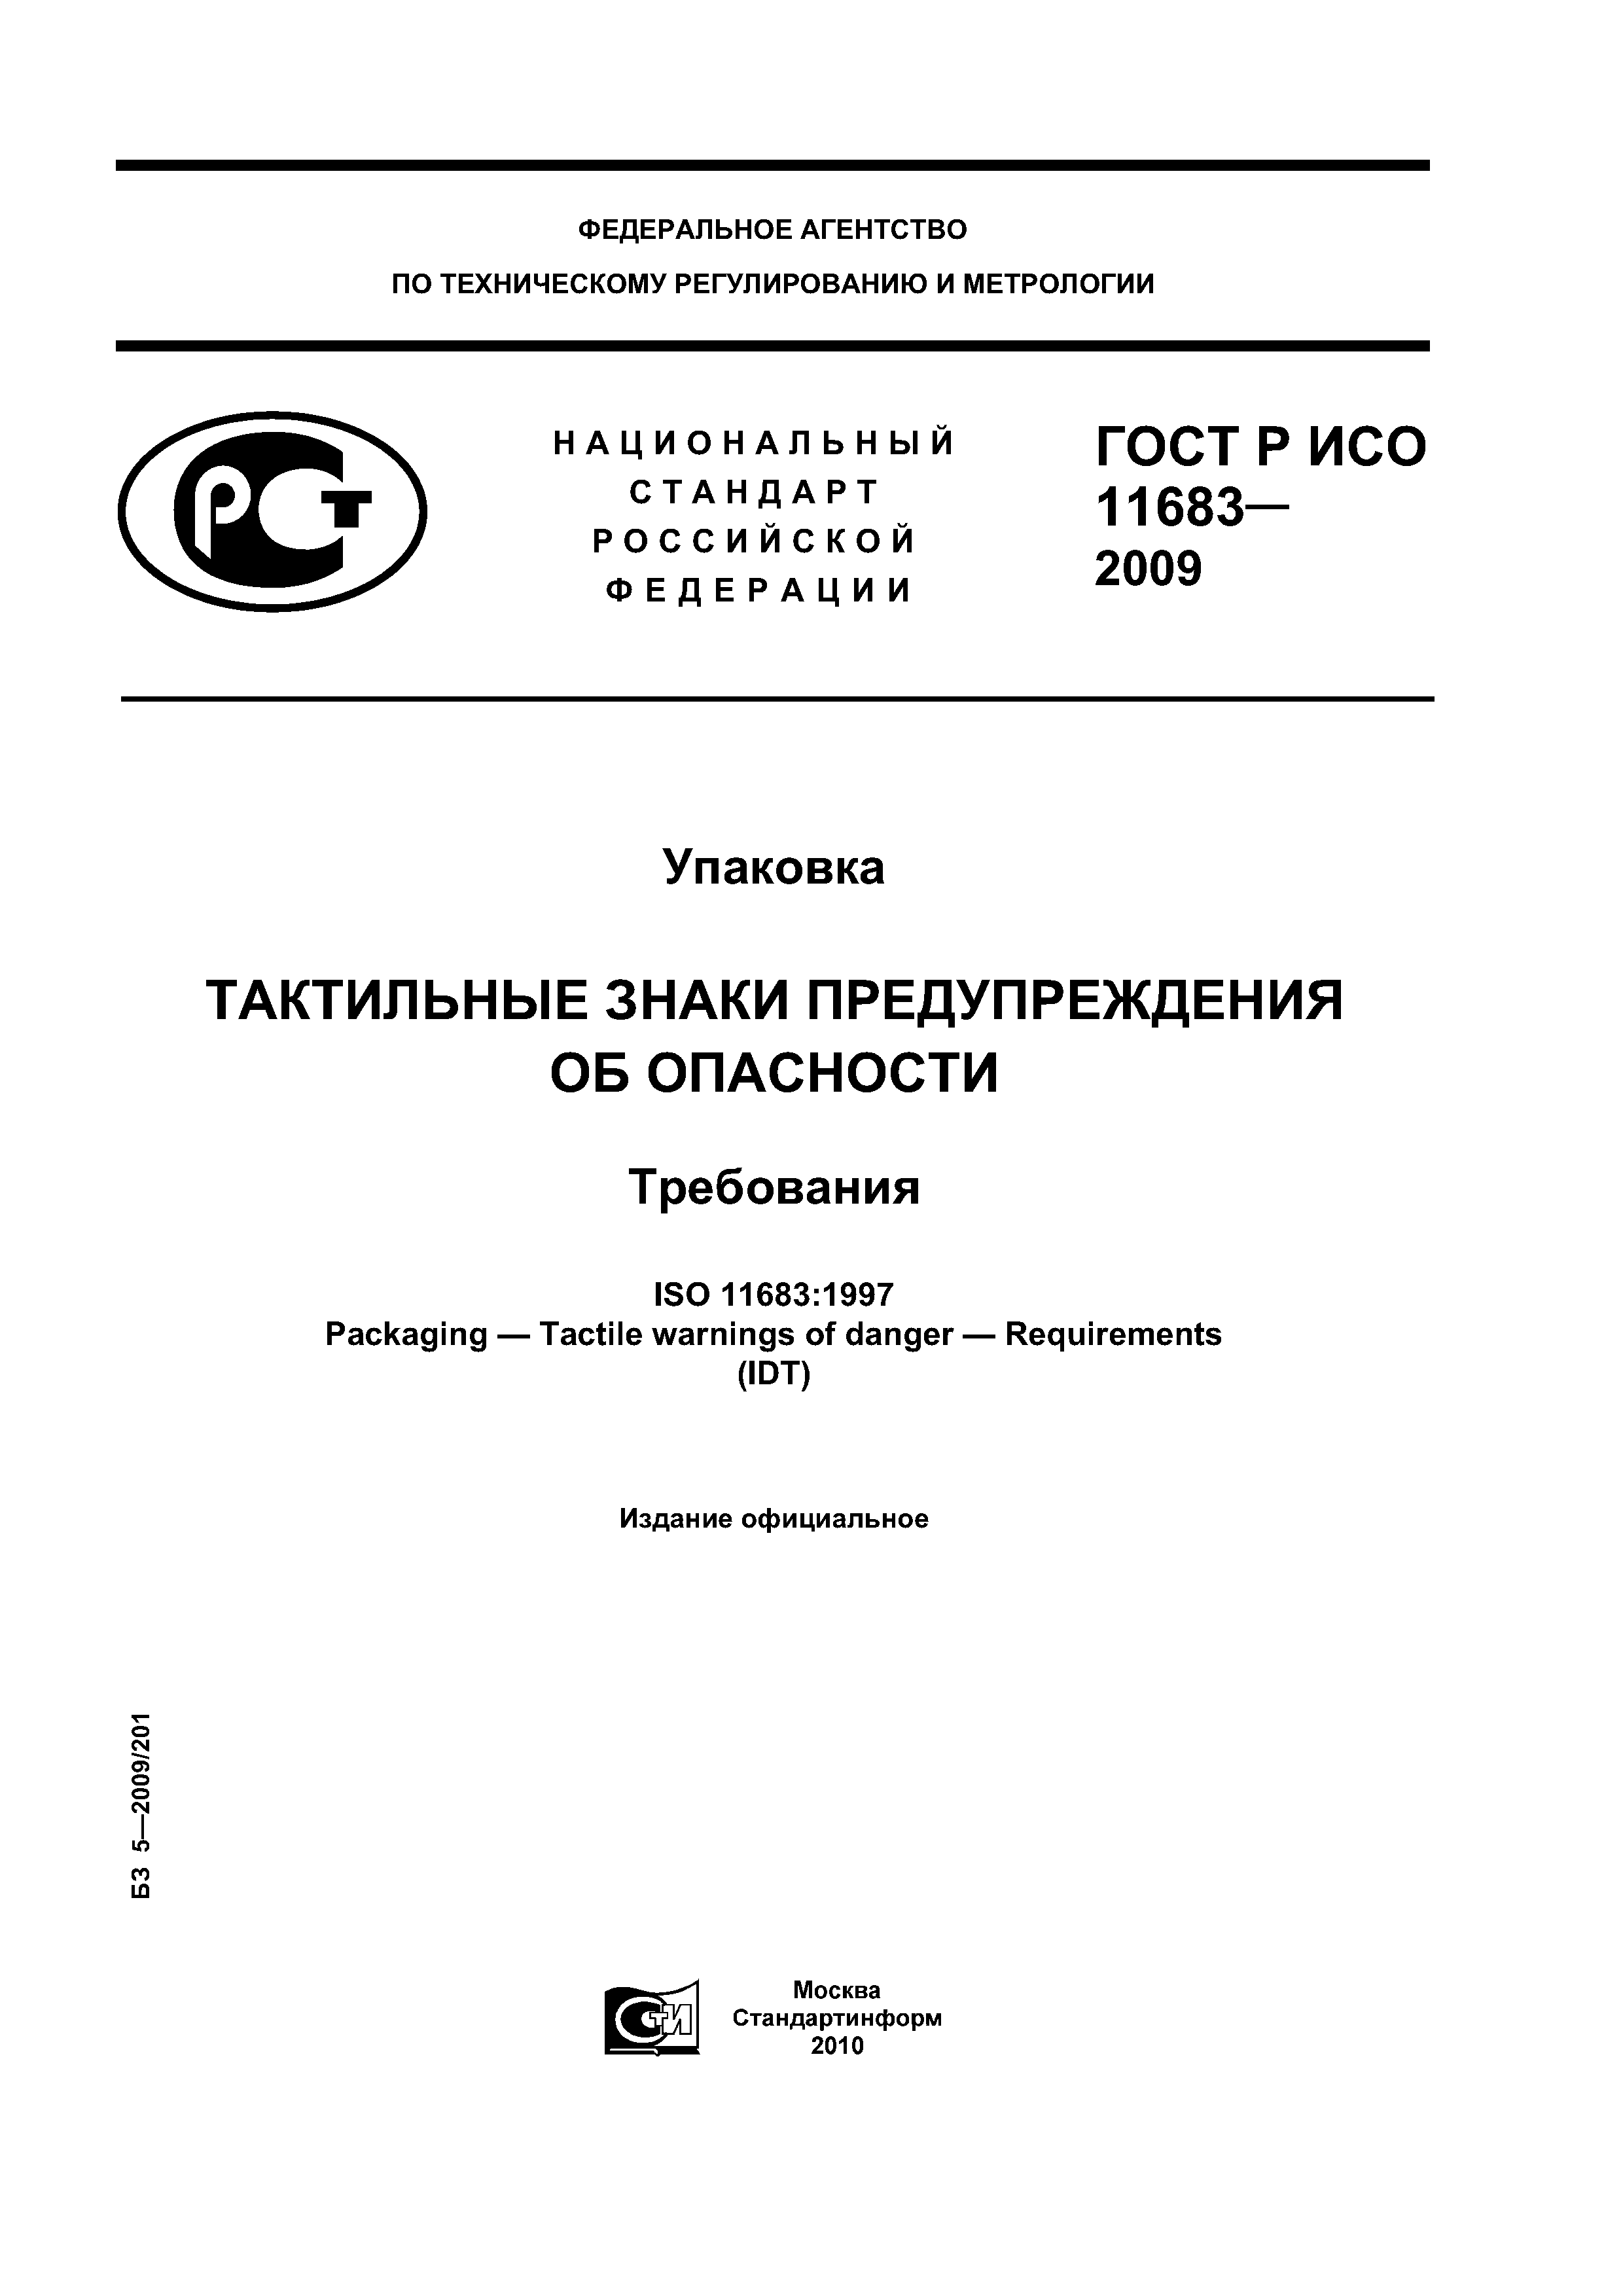 ГОСТ Р ИСО 11683-2009